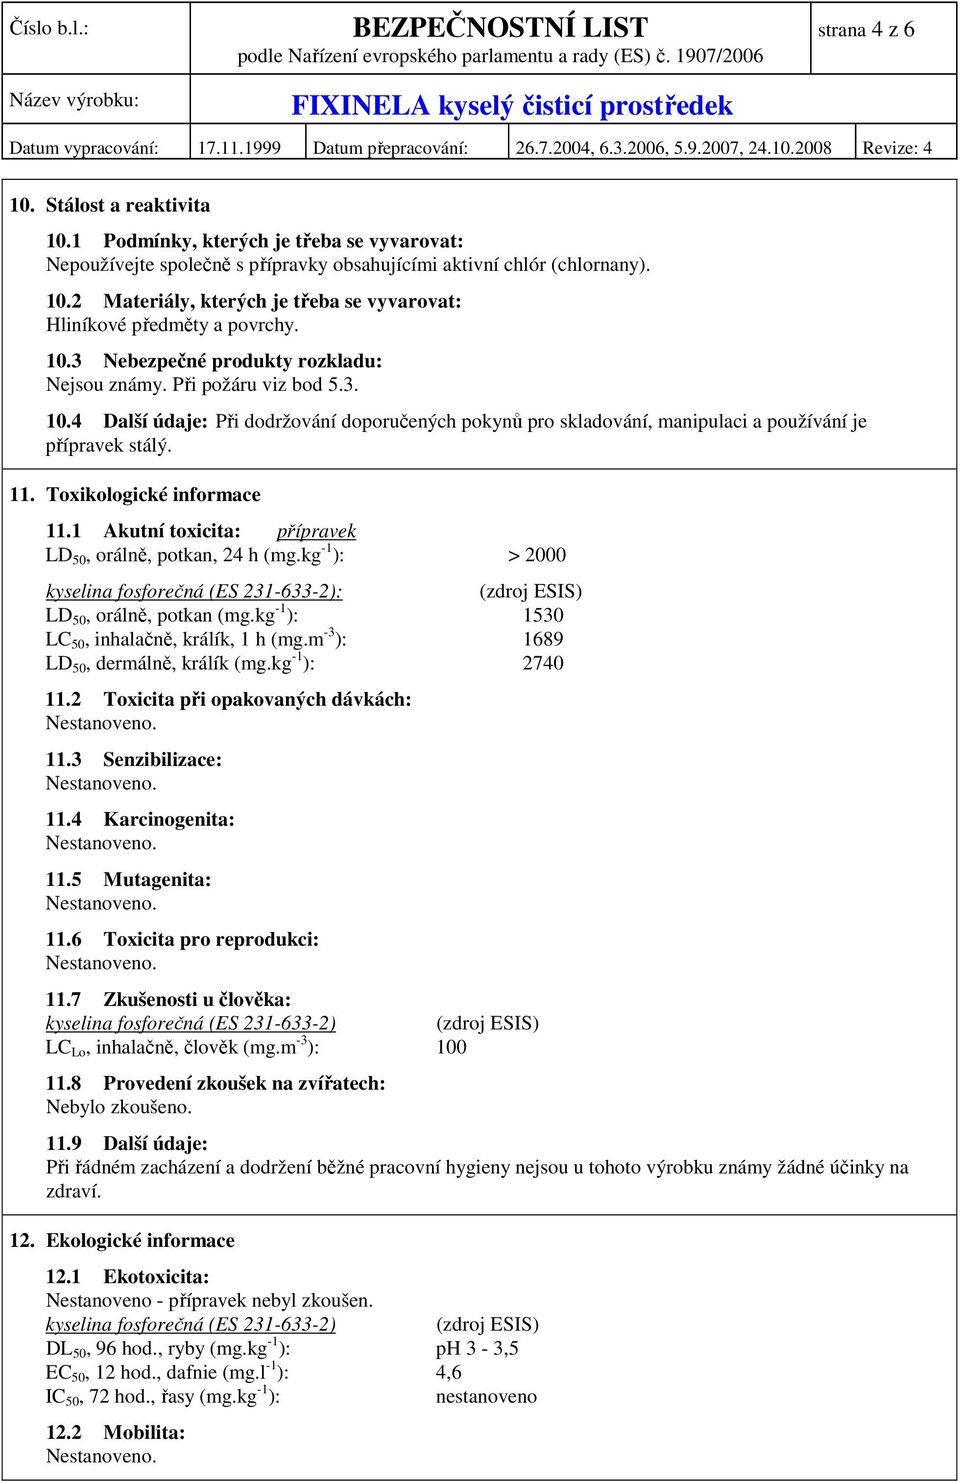 Toxikologické informace 11.1 Akutní toxicita: přípravek LD 50, orálně, potkan, 24 h (mg.kg -1 ): > 2000 kyselina fosforečná (ES 231-633-2): (zdroj ESIS) LD 50, orálně, potkan (mg.